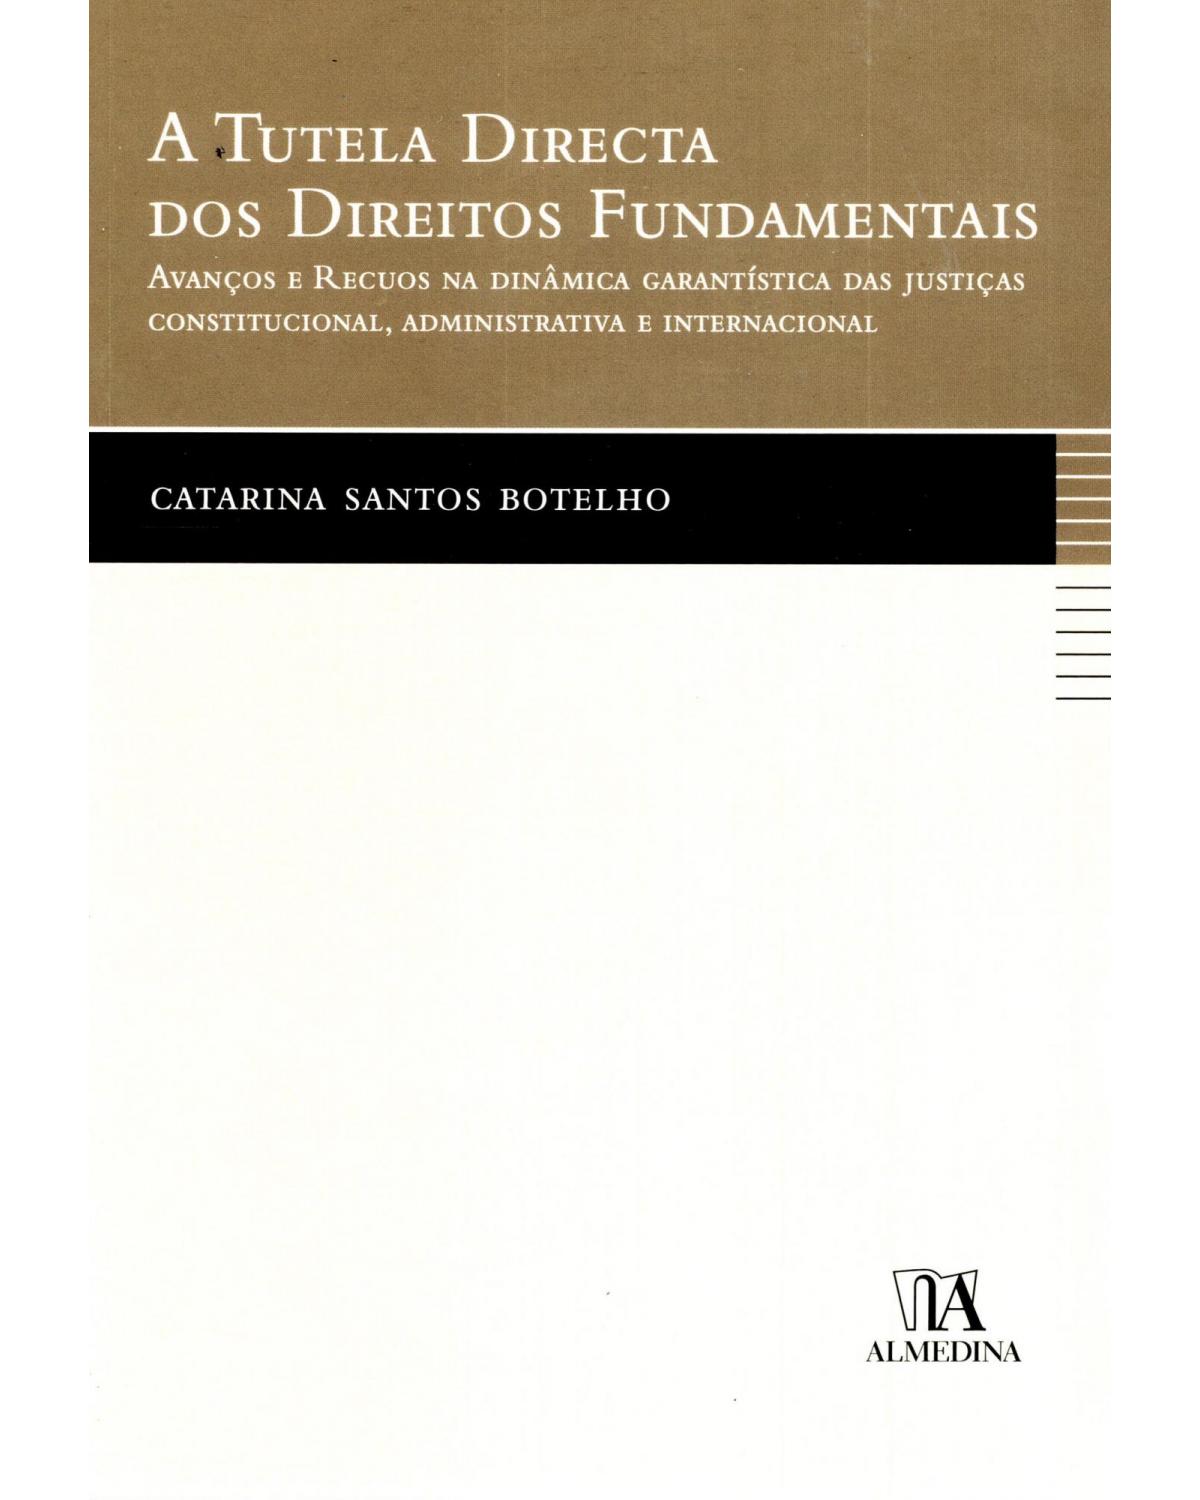 A tutela directa dos direitos fundamentais - avanços e recuos na dinâmica garantística das justiças constitucional, administrativa e internacional - 1ª Edição | 2010